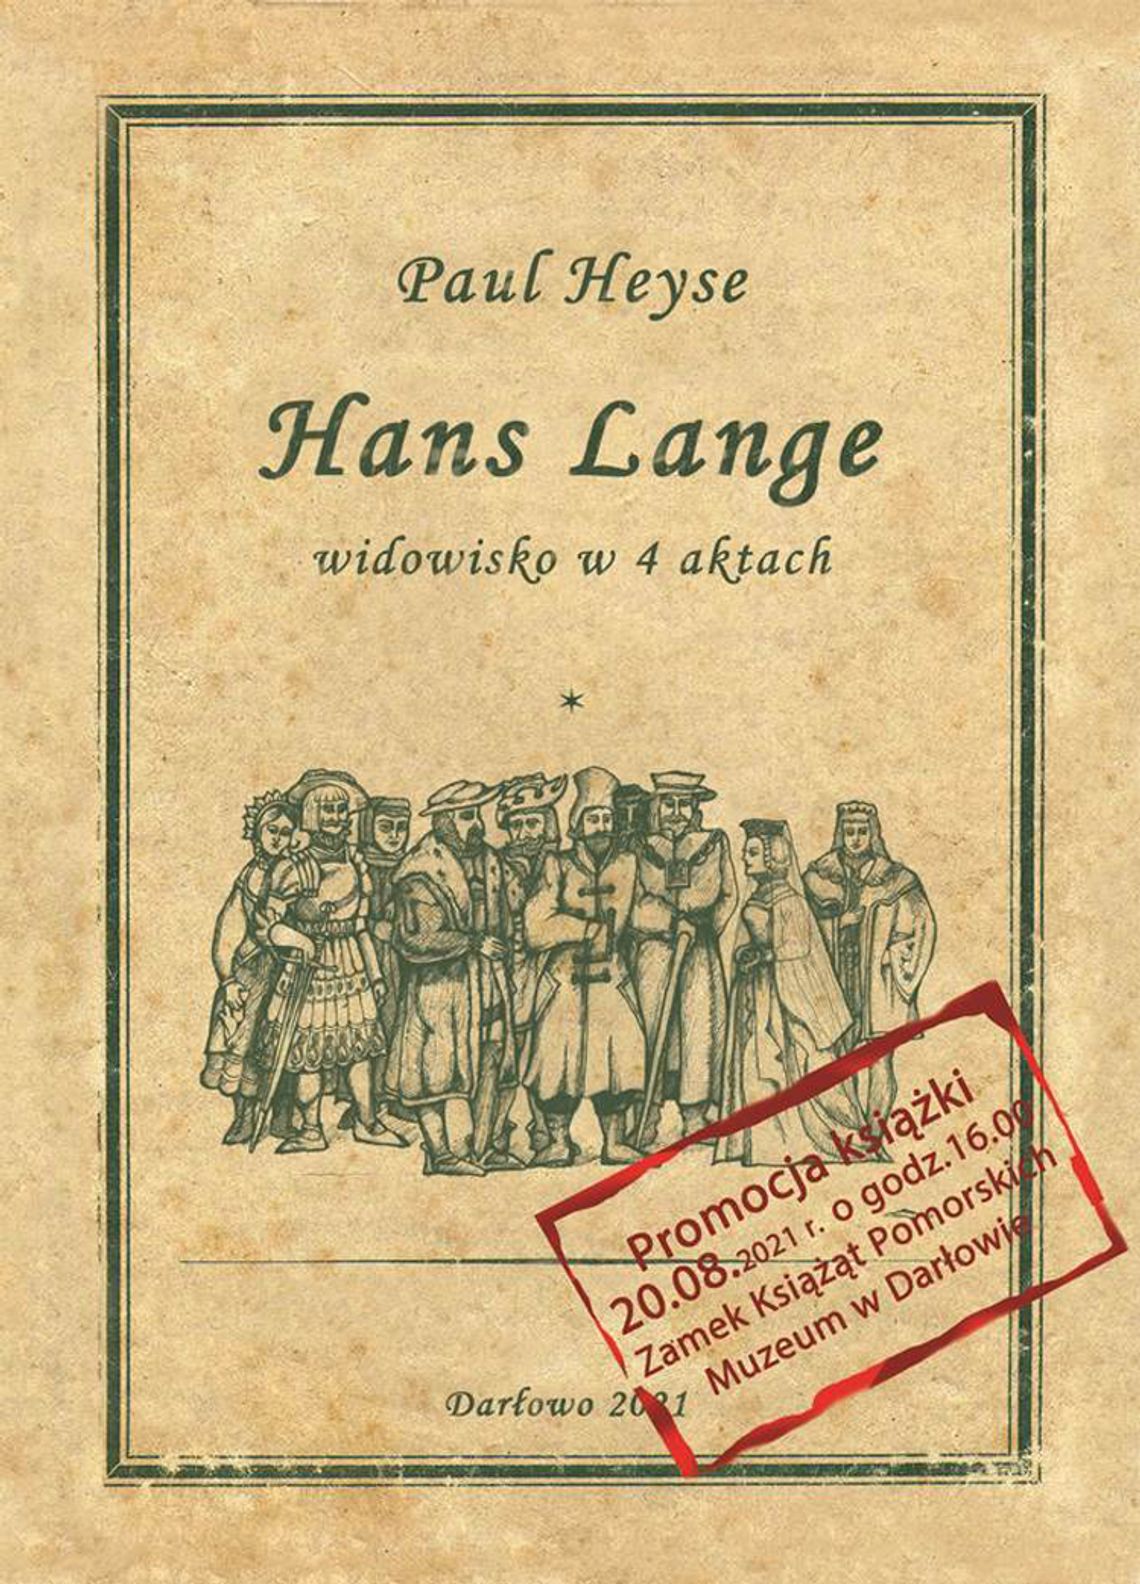 Darłowo: przyjdź na promocję książki o Hansie Lange w tłumaczeniu Brygidy Jerzewskiej